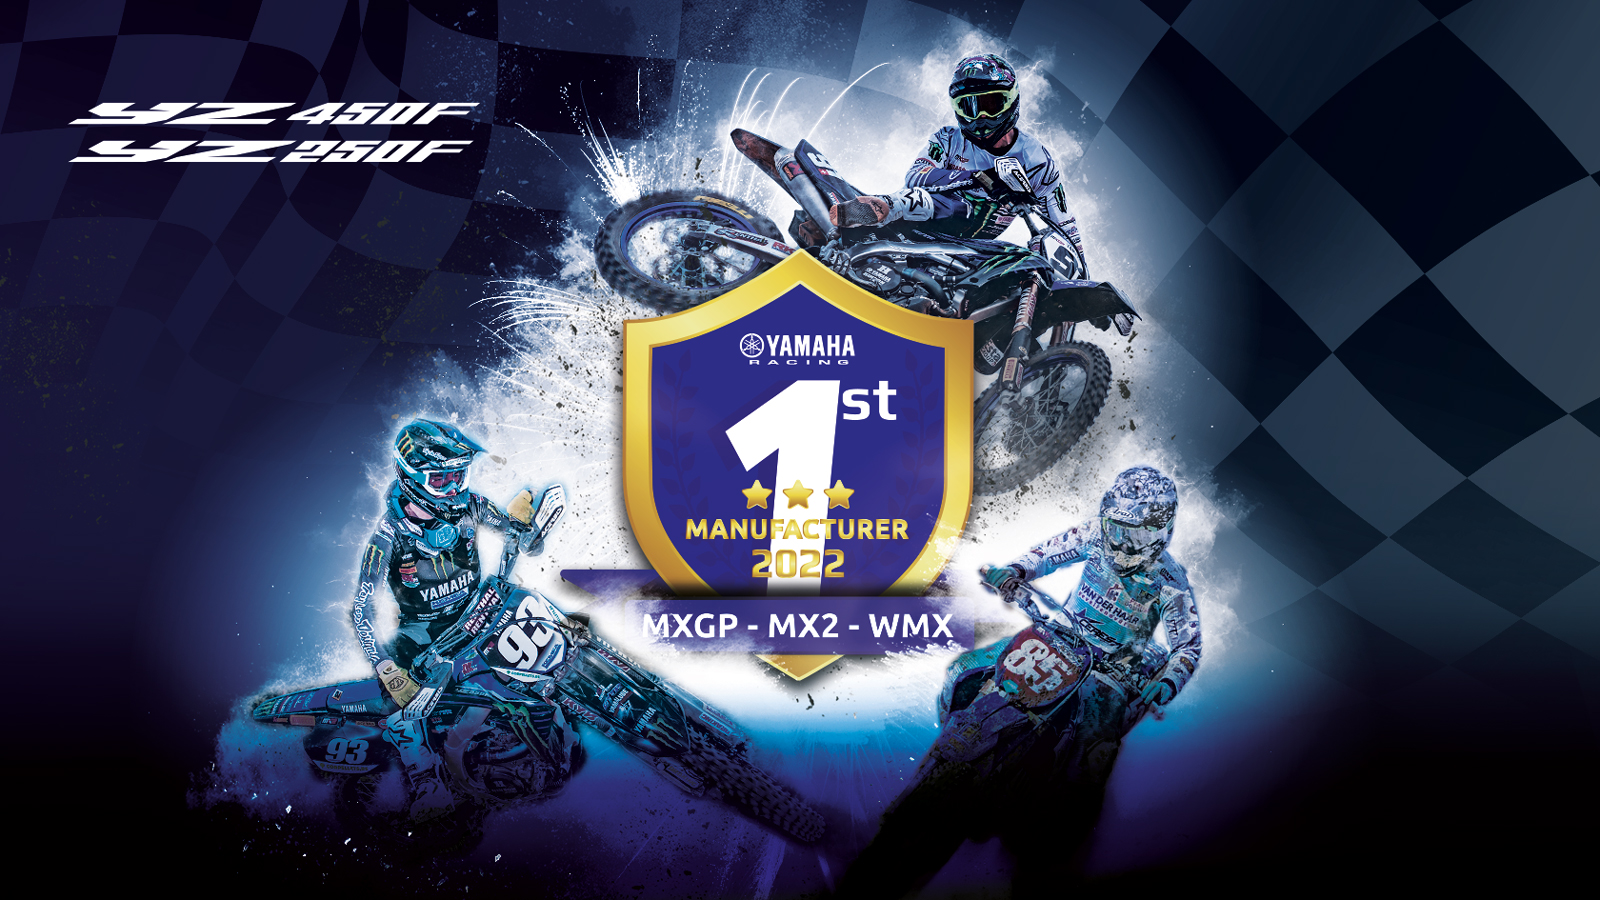 Yamaha ẵm trọn 3 danh hiệu Nhà sản xuất tại đấu trường Motocross